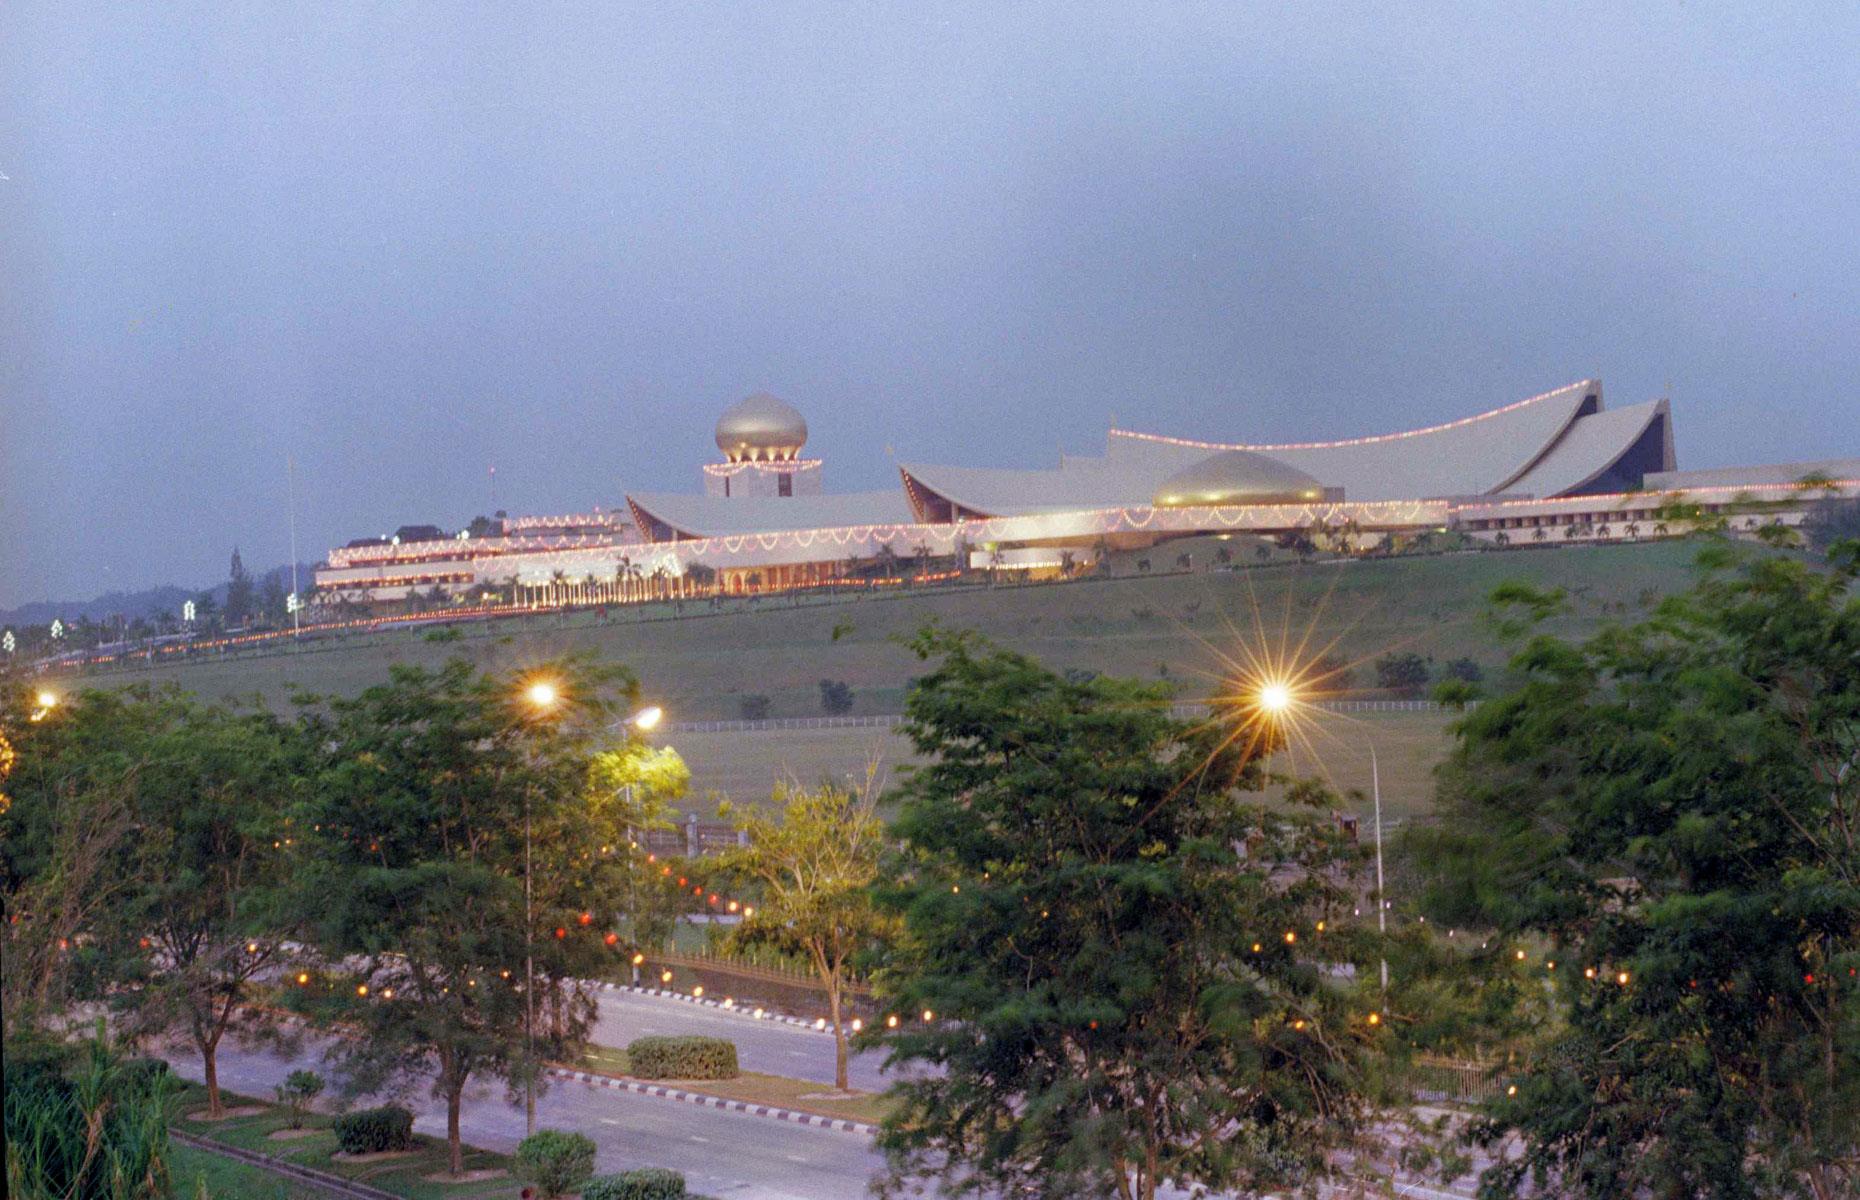 Istana Nurul Iman Palace, Brunei – $3.9 billion (£2.9bn)